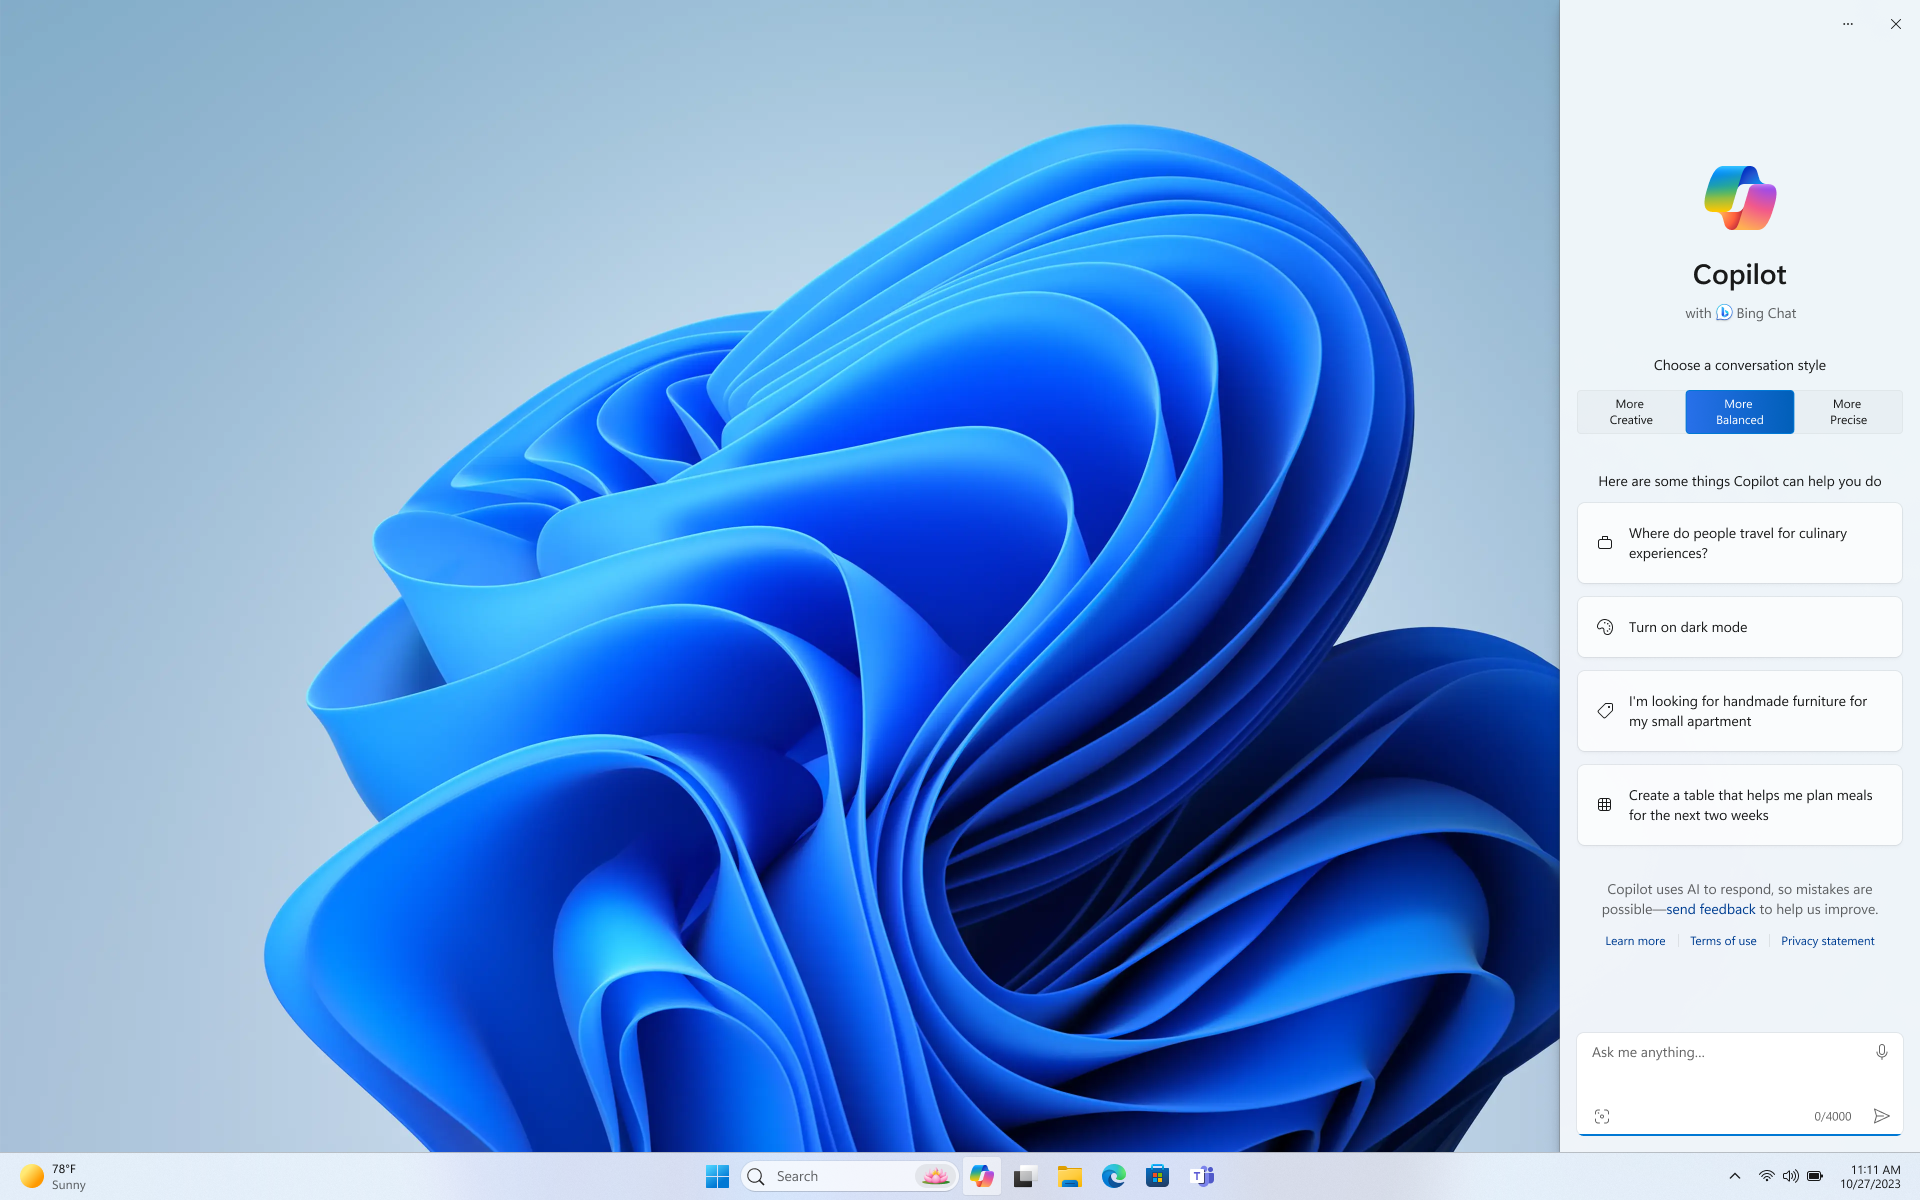 Ảnh chụp màn hình của màn hình nền Windows sử dụng chủ đề sáng với Copilot trong thanh bên Windows được hiển thị phù hợp với chủ đề.